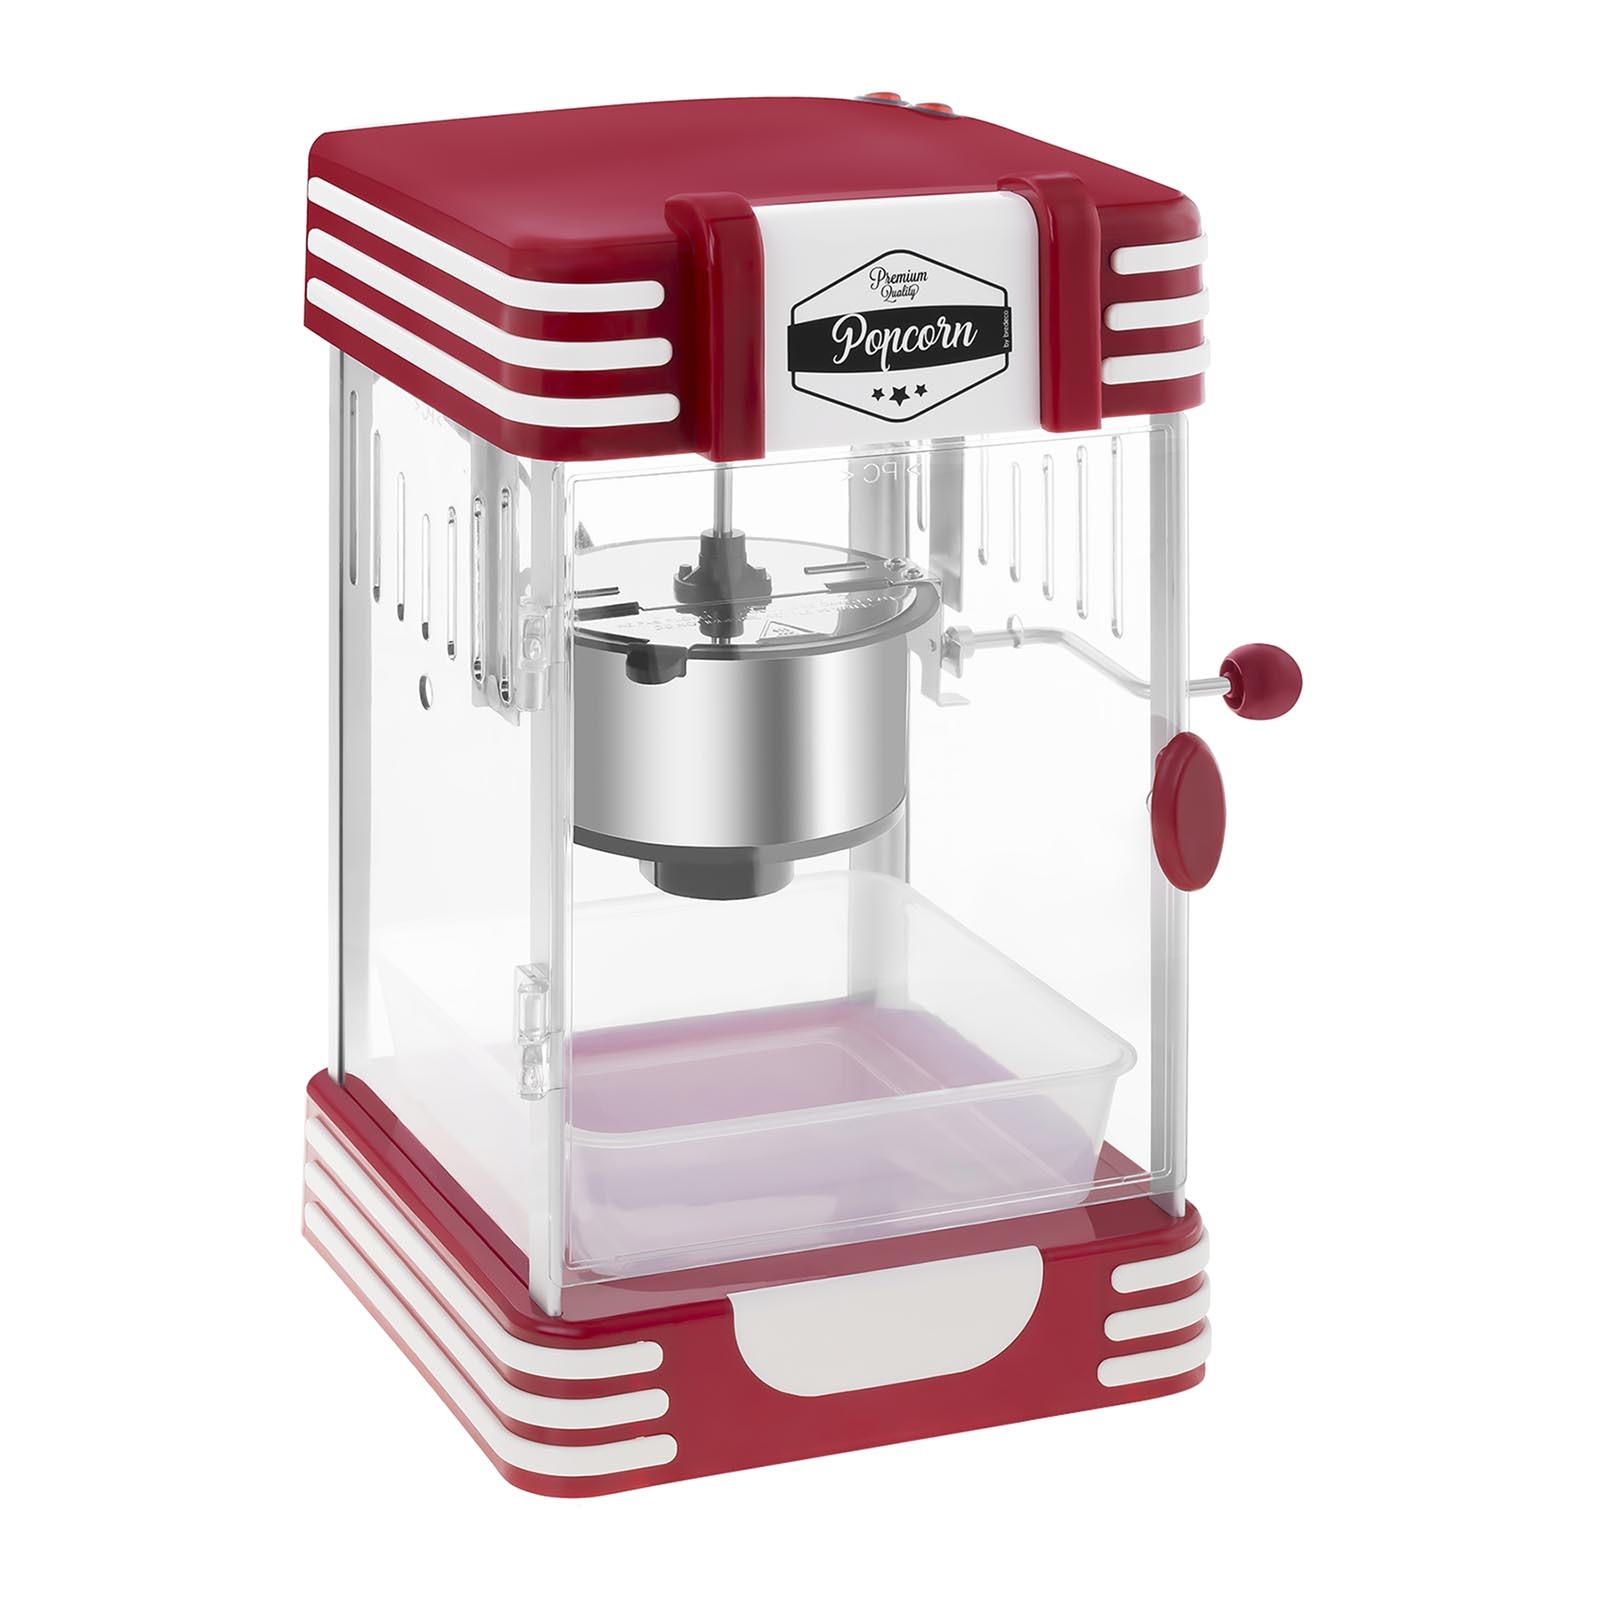 Bredeco Popcorn Machine - Retro-design jaren 50 - rood